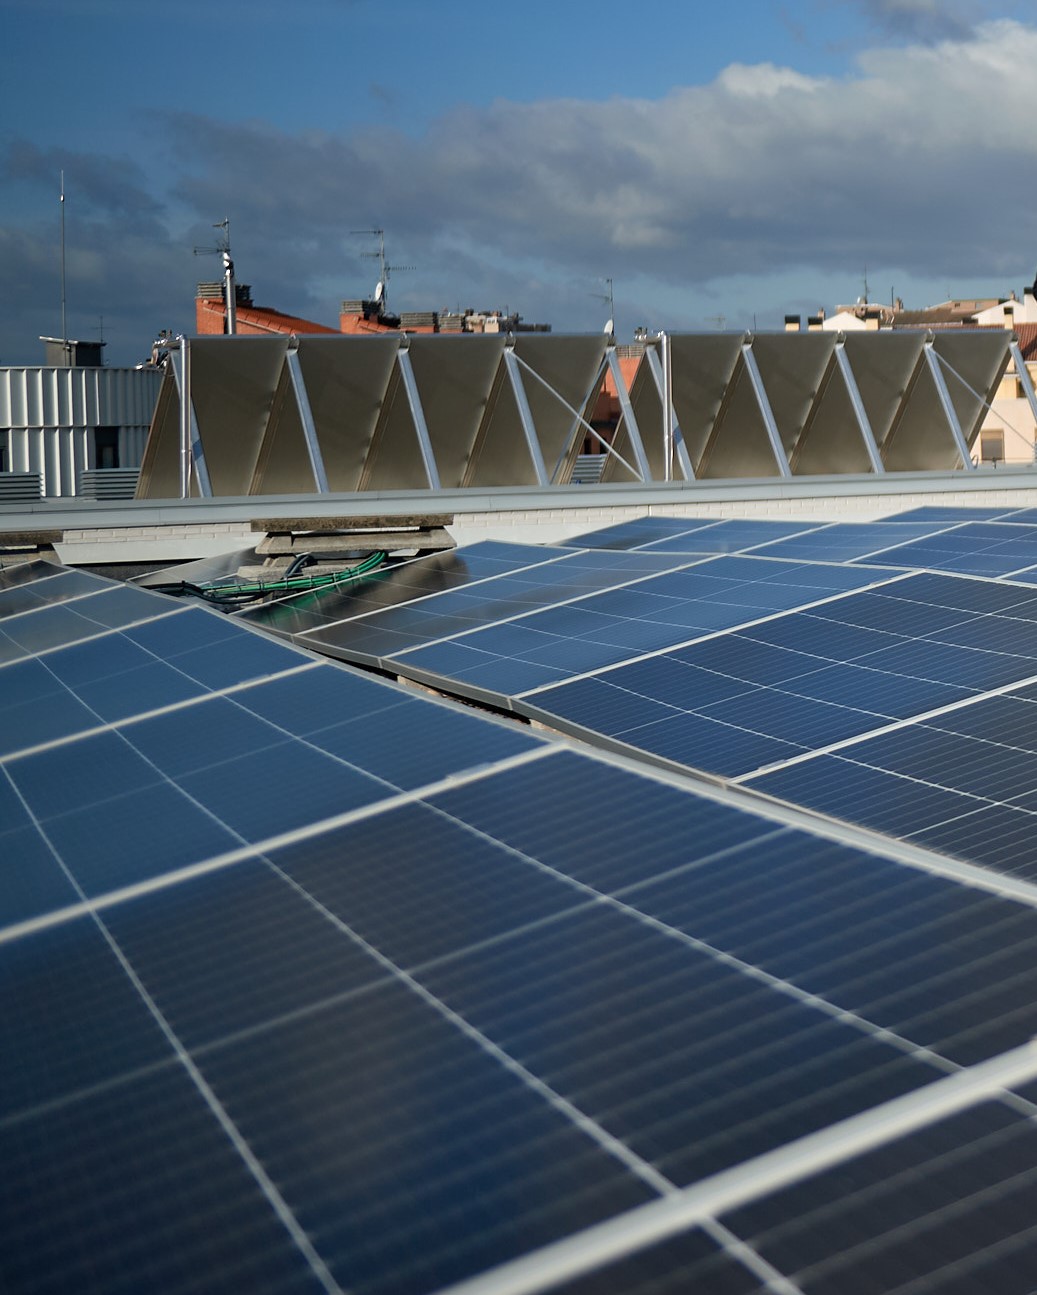 ¿Qué potencial solar tiene tu tejado si instalas placas solares?